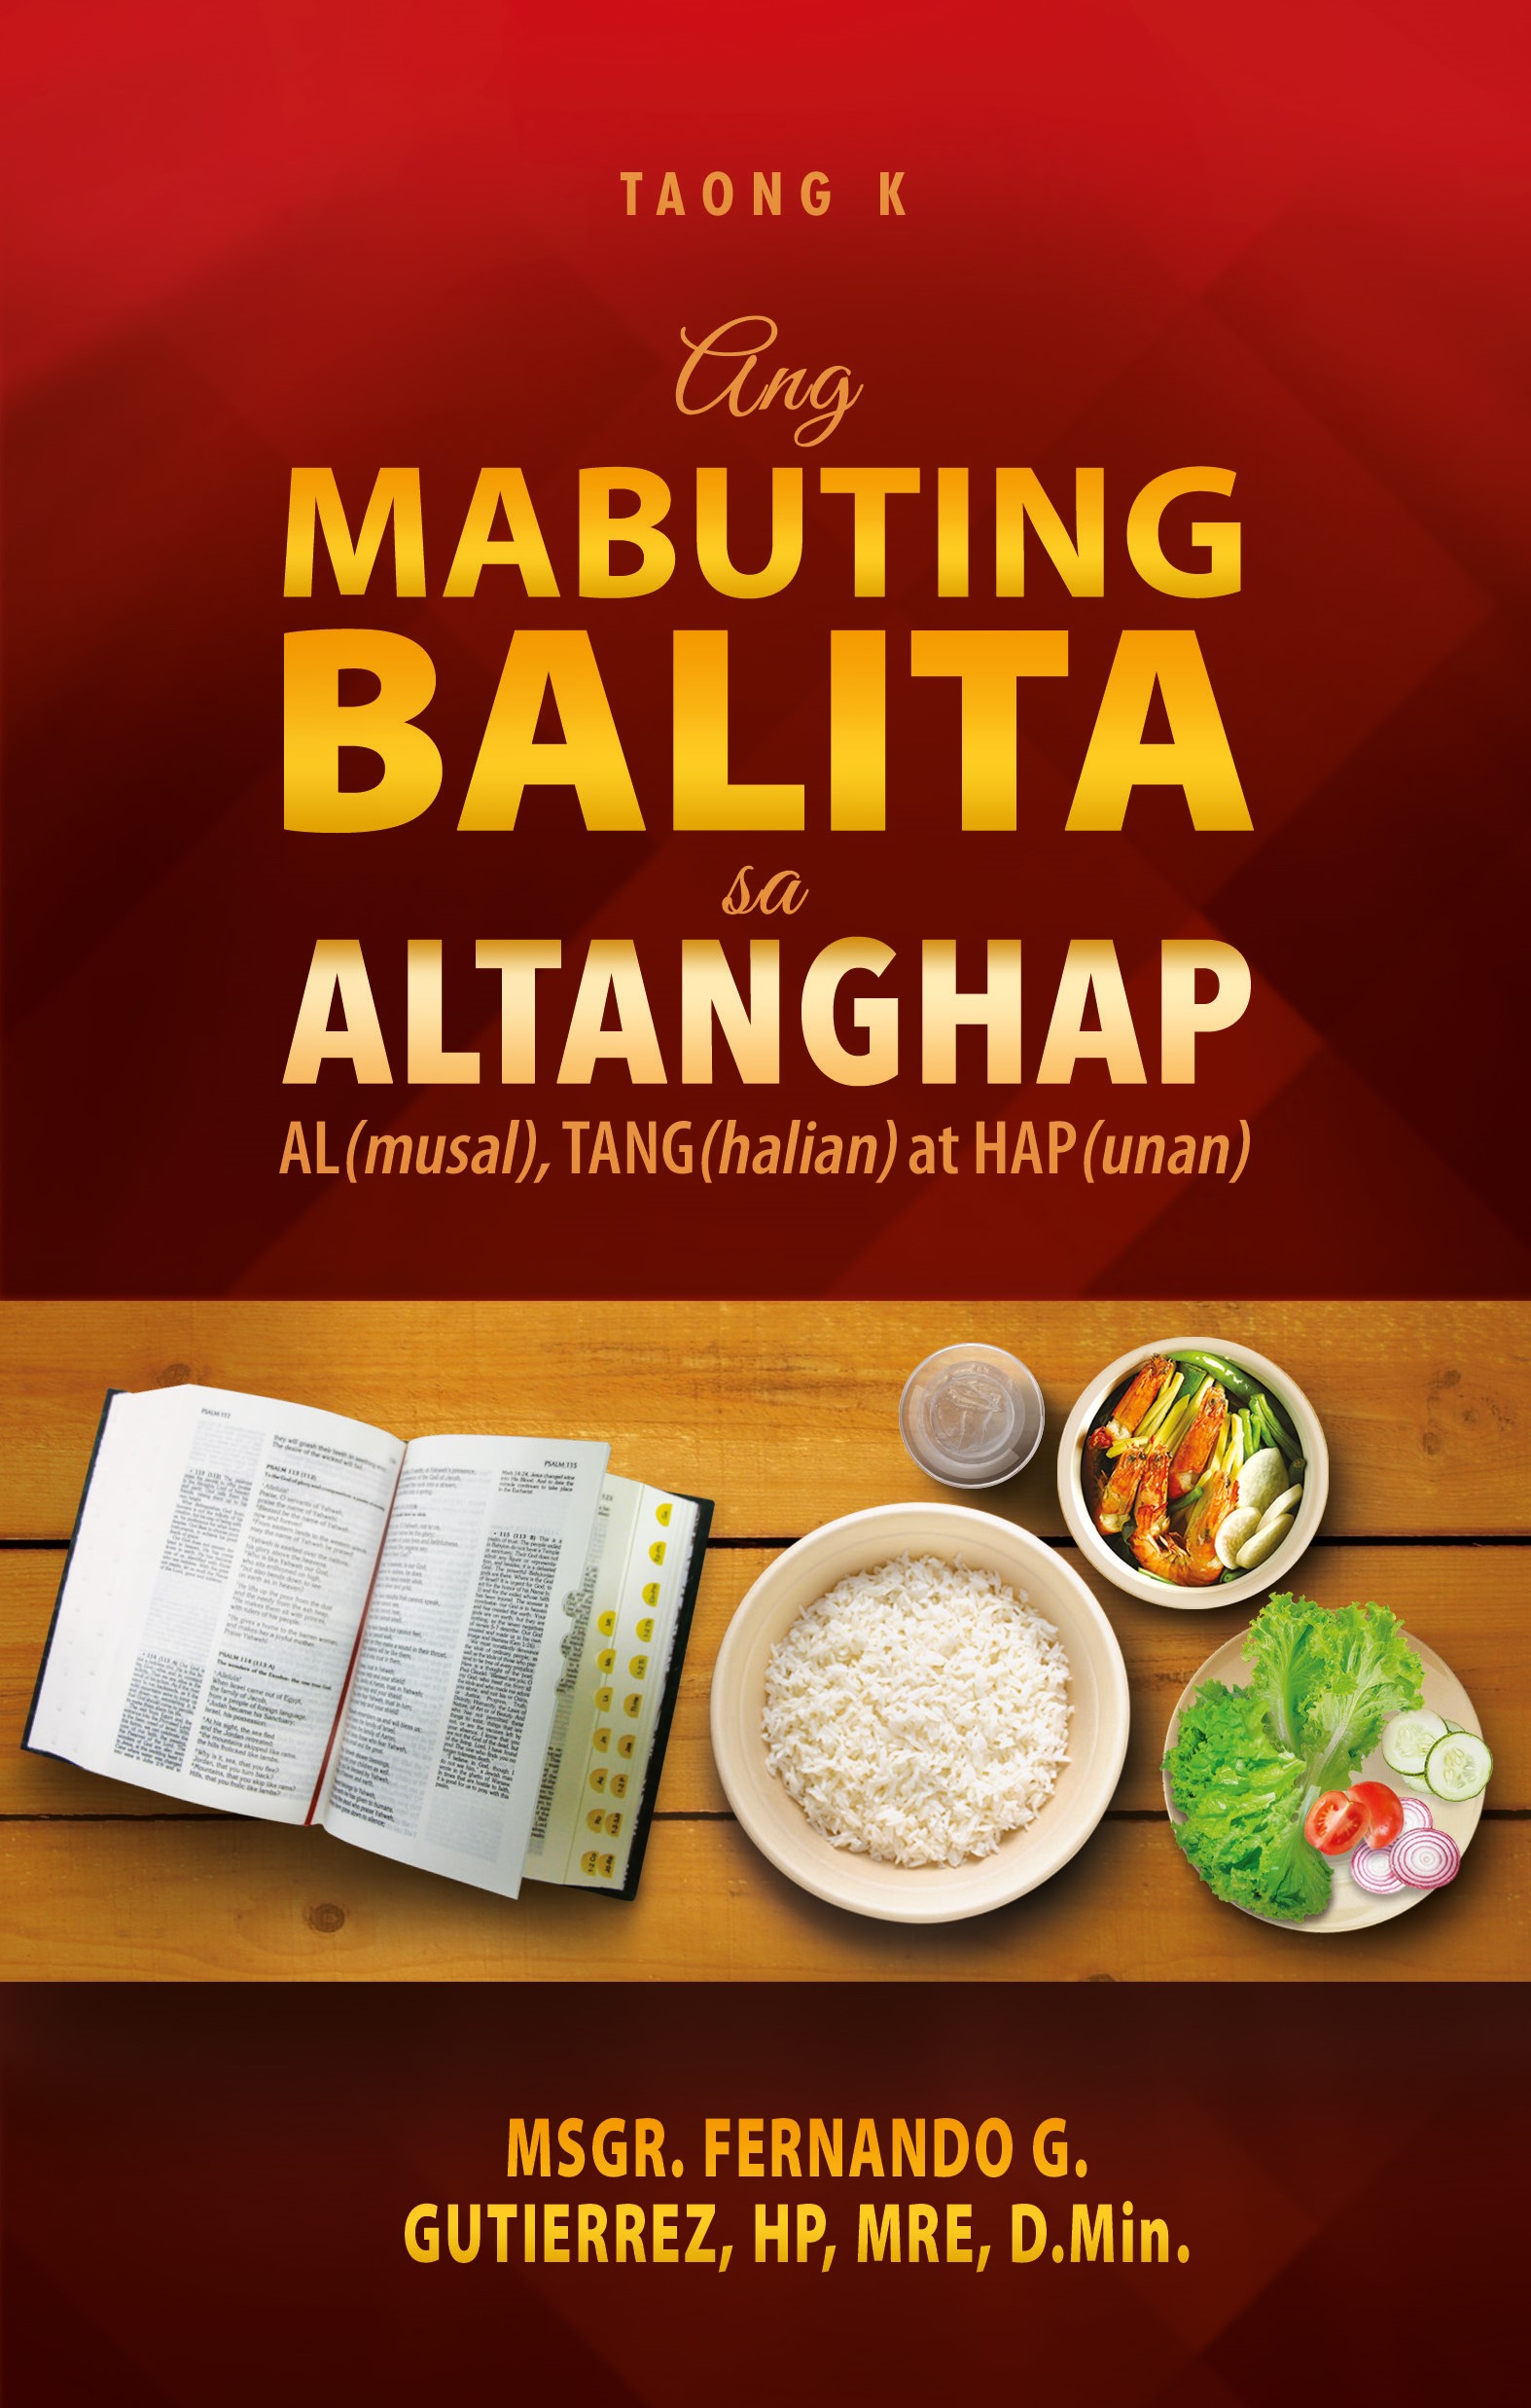 ANG MABUTING BALITA SA ALTANGHAP TAONG K AL(musal), TANG(halian) at HAP(unan)